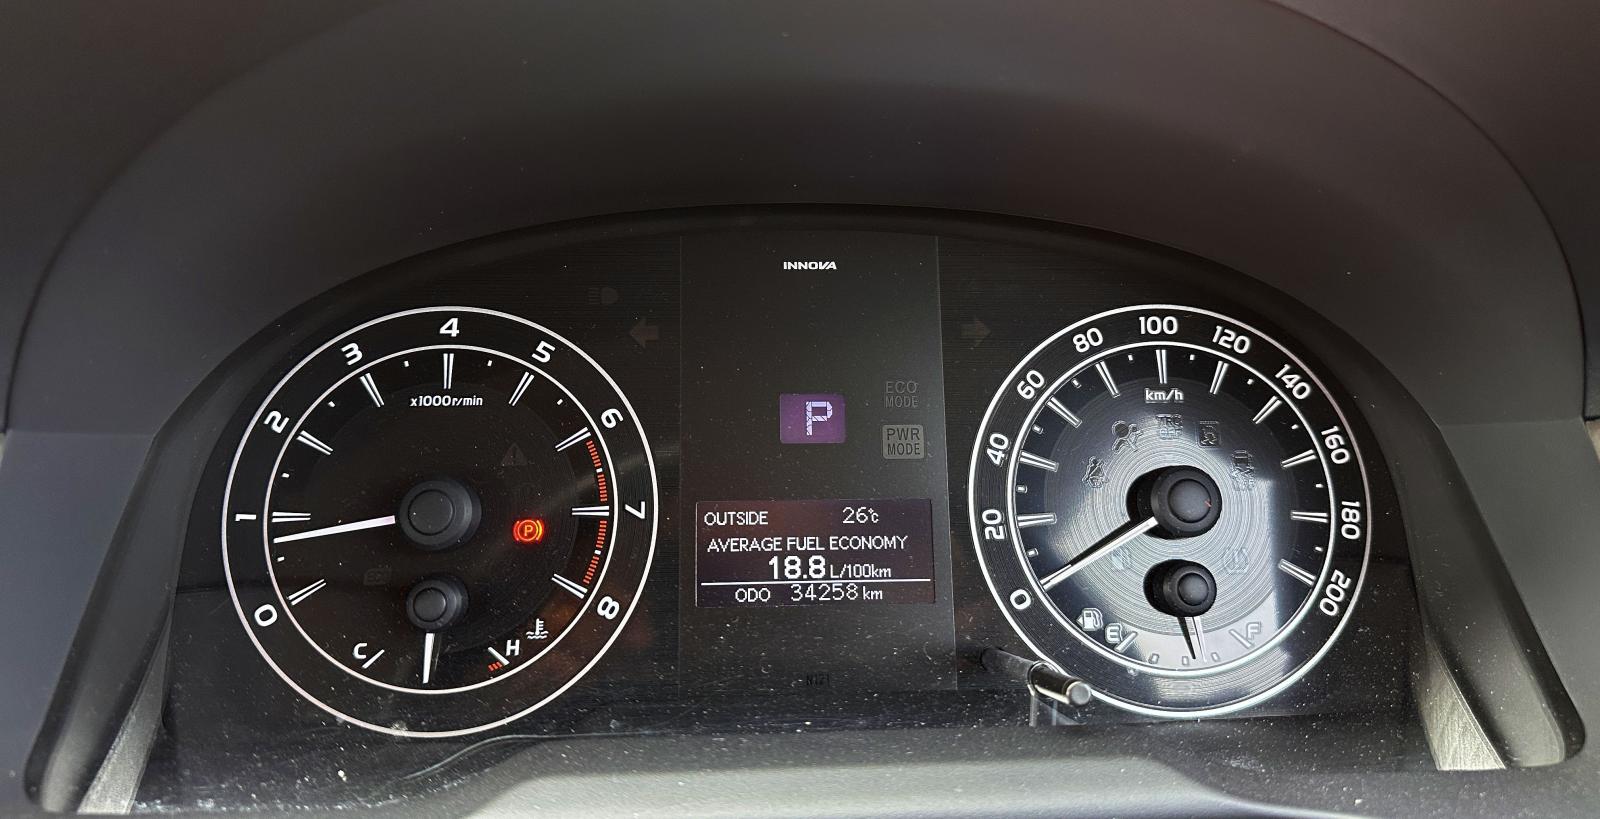 Toyota Kijang Innova 2.0 G 2018 dp 0 km 30rb bs tt om